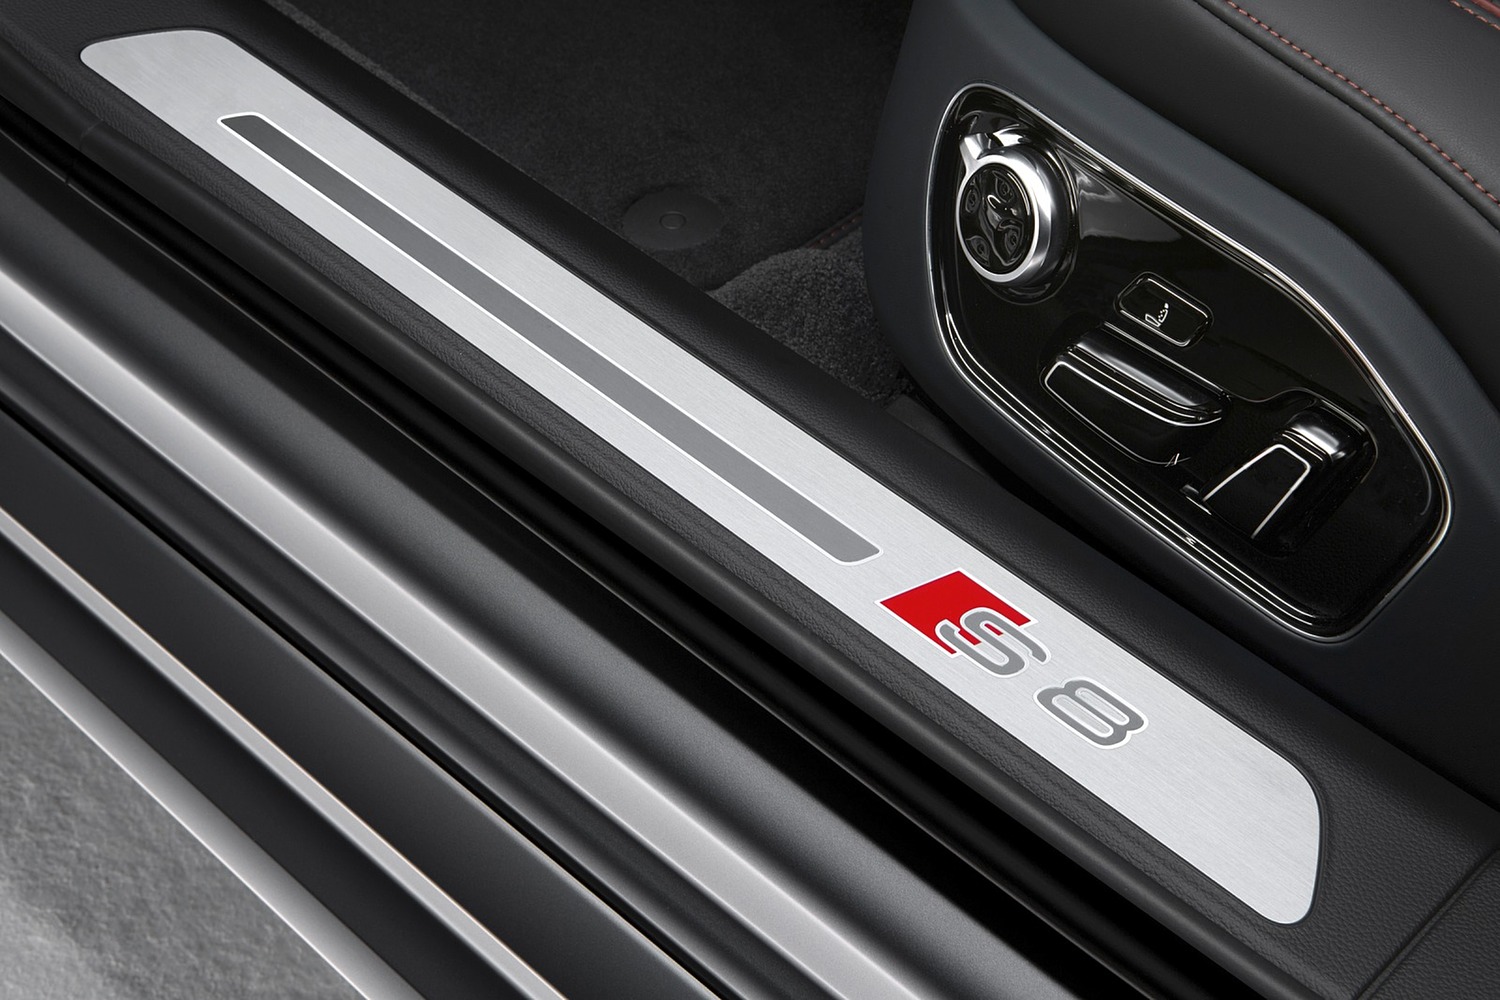 Audi S8 plus quattro Sedan Interior Detail (2017 model year shown)